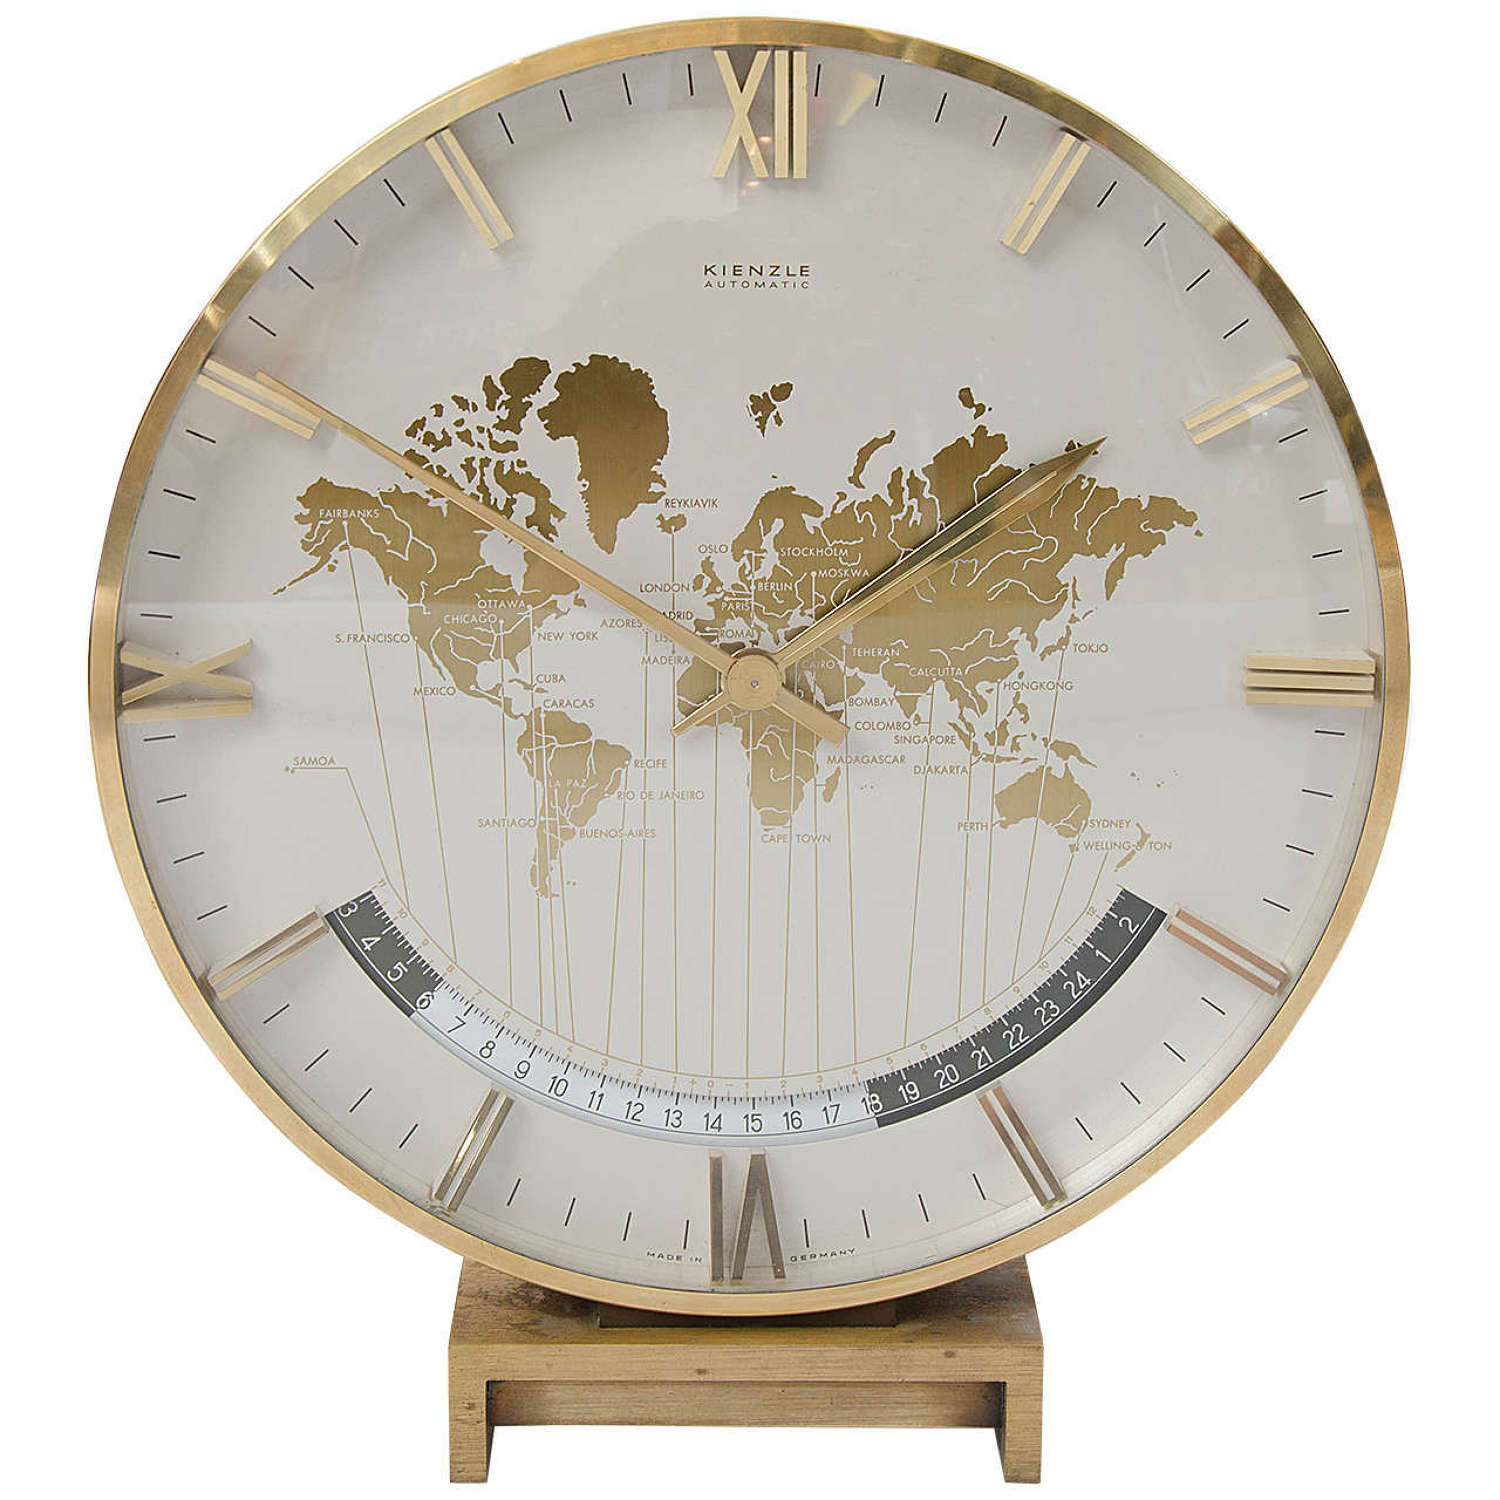 Kienzle World Time Zone Desk Clock by Heinrich Möller